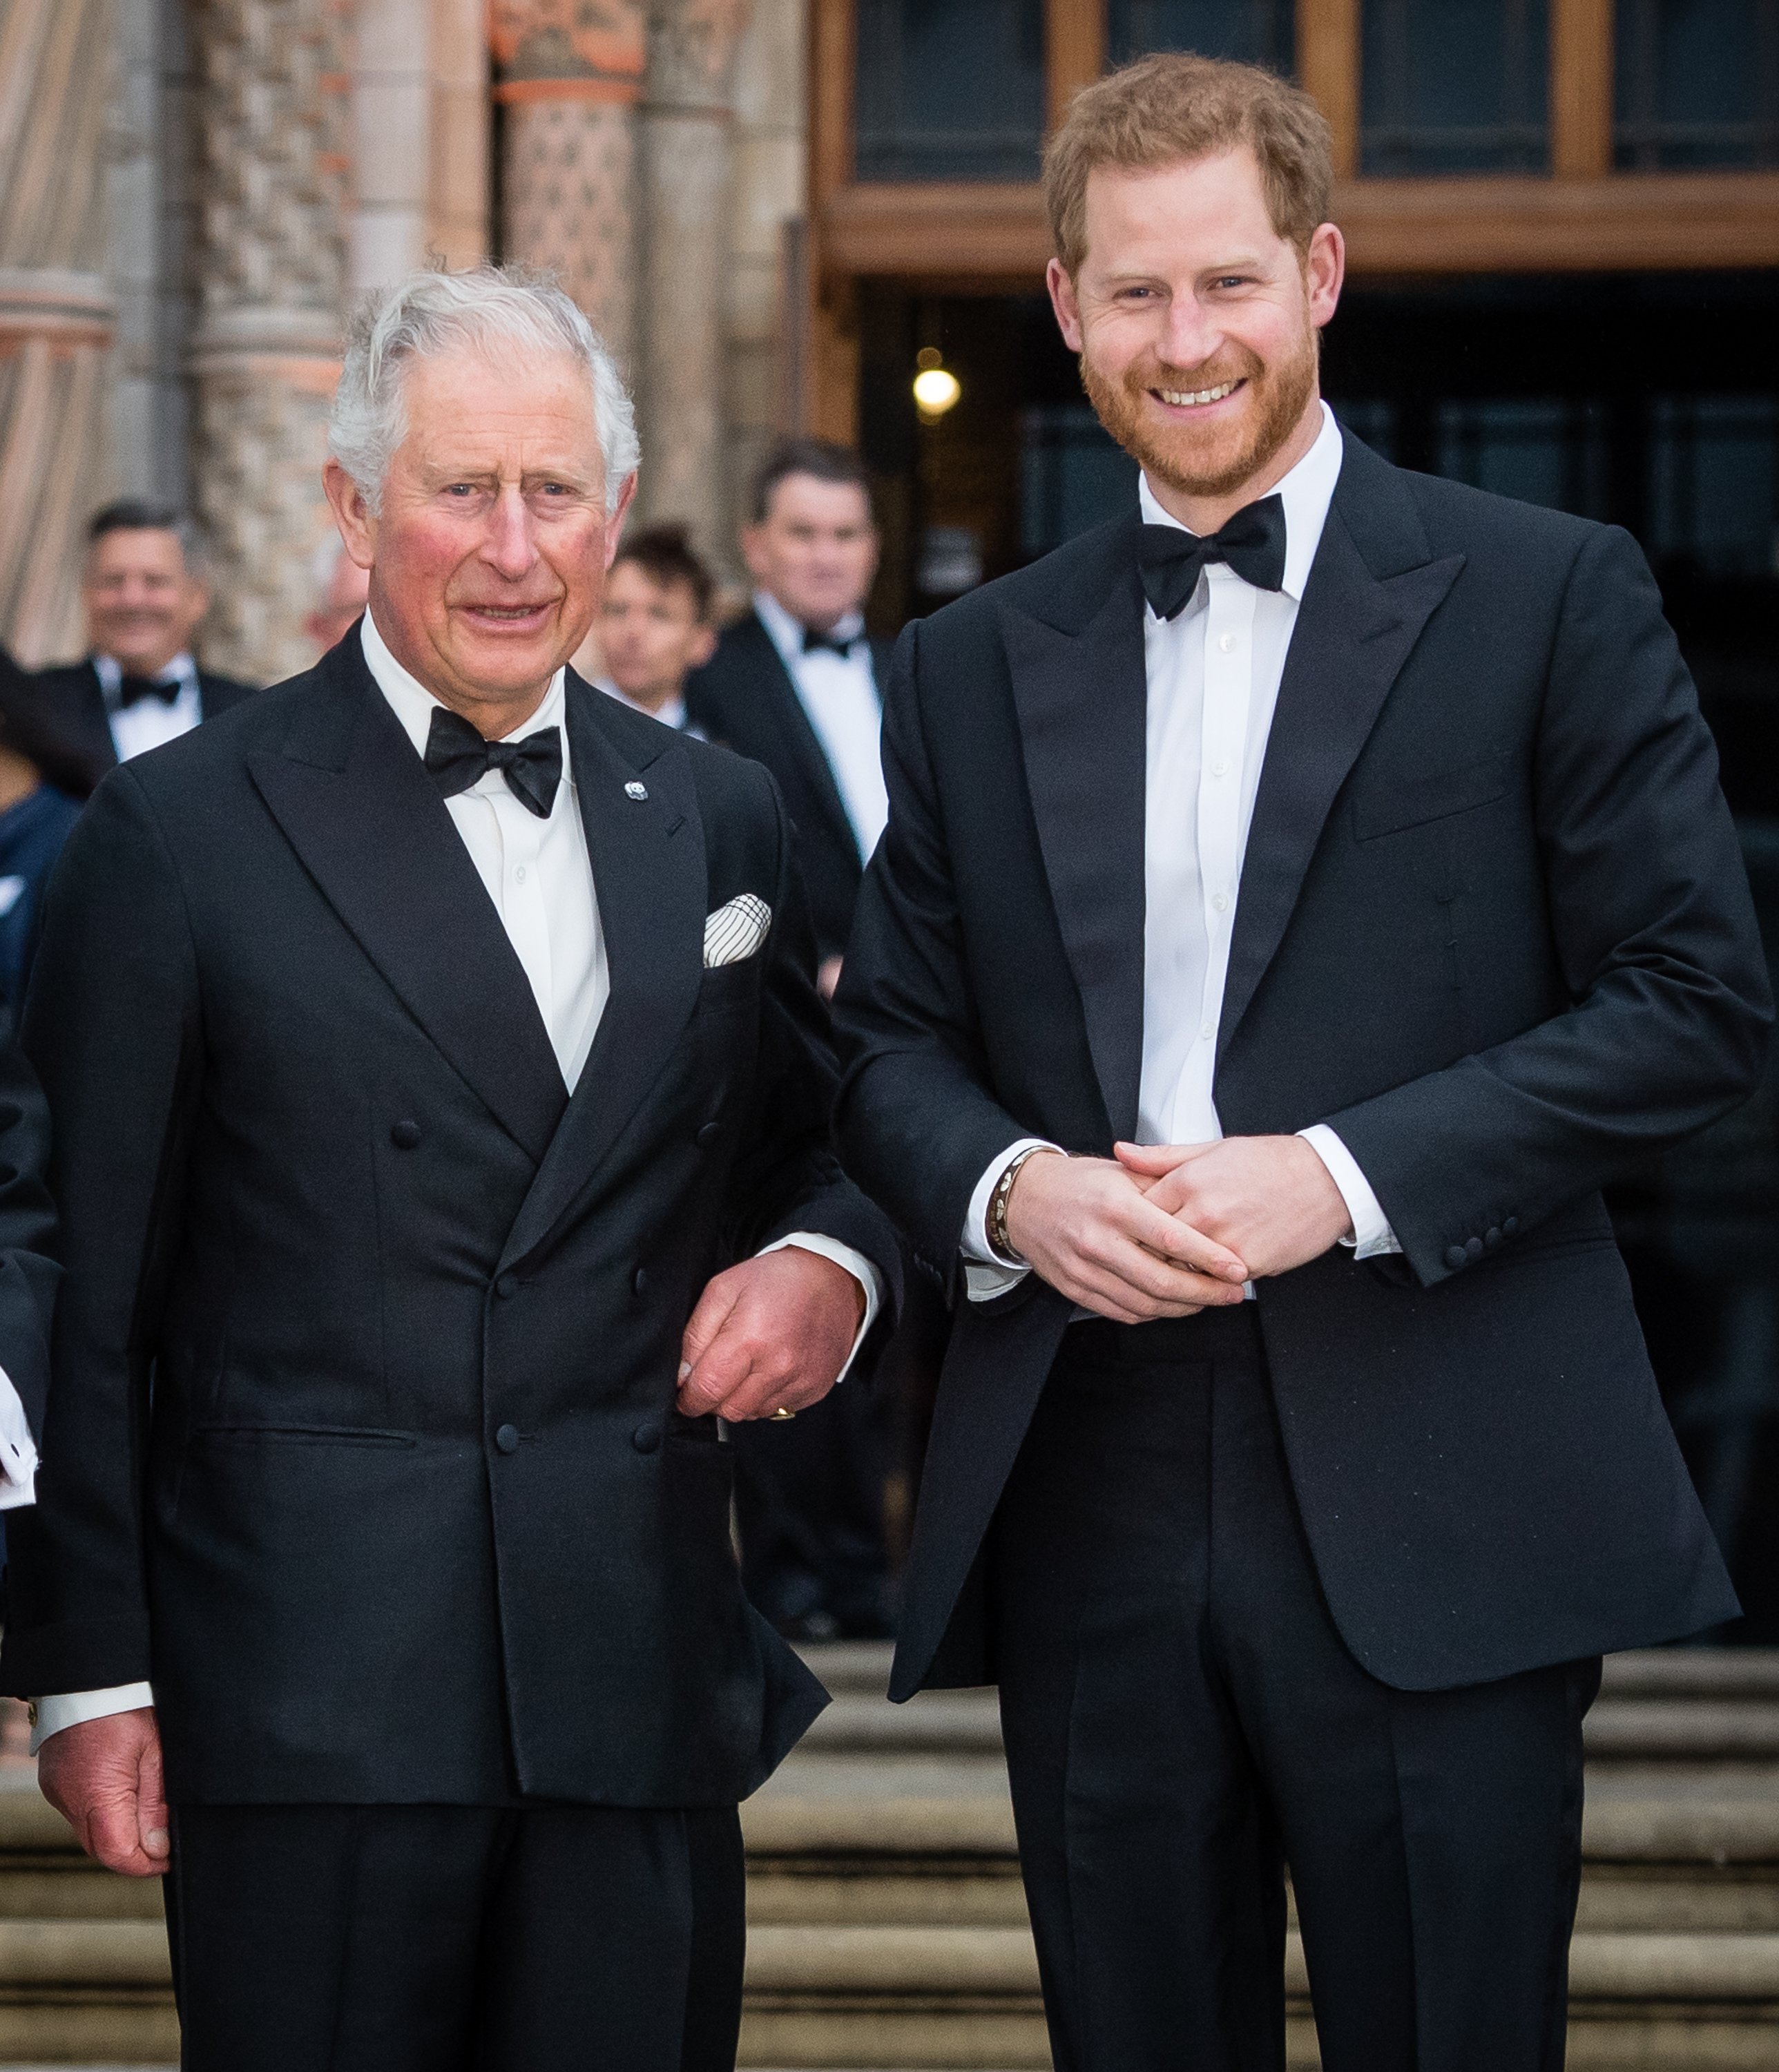 El príncipe Charles, príncipe de Gales, y el príncipe Harry, duque de Sussex, en el estreno mundial de "Our Planet" en el Museo de Historia Natural, el 4 de abril de 2019 en Londres, Inglaterra. | Foto: Getty Images